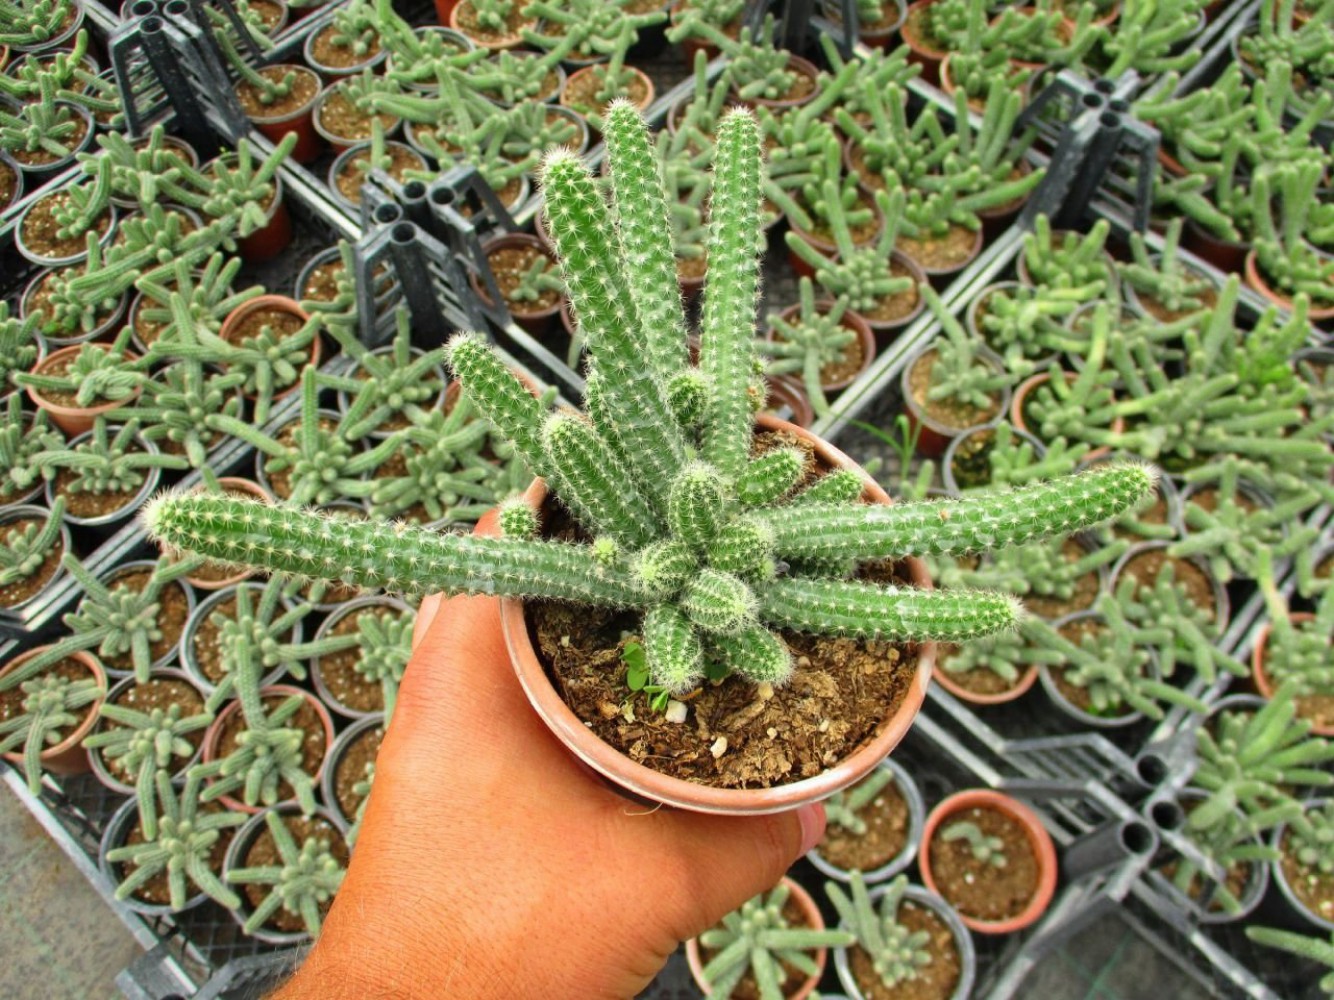 yilan-kaktus-3-adet-chamaecereus-silvestriiyilan-kaktus-3-adet-1.jpg